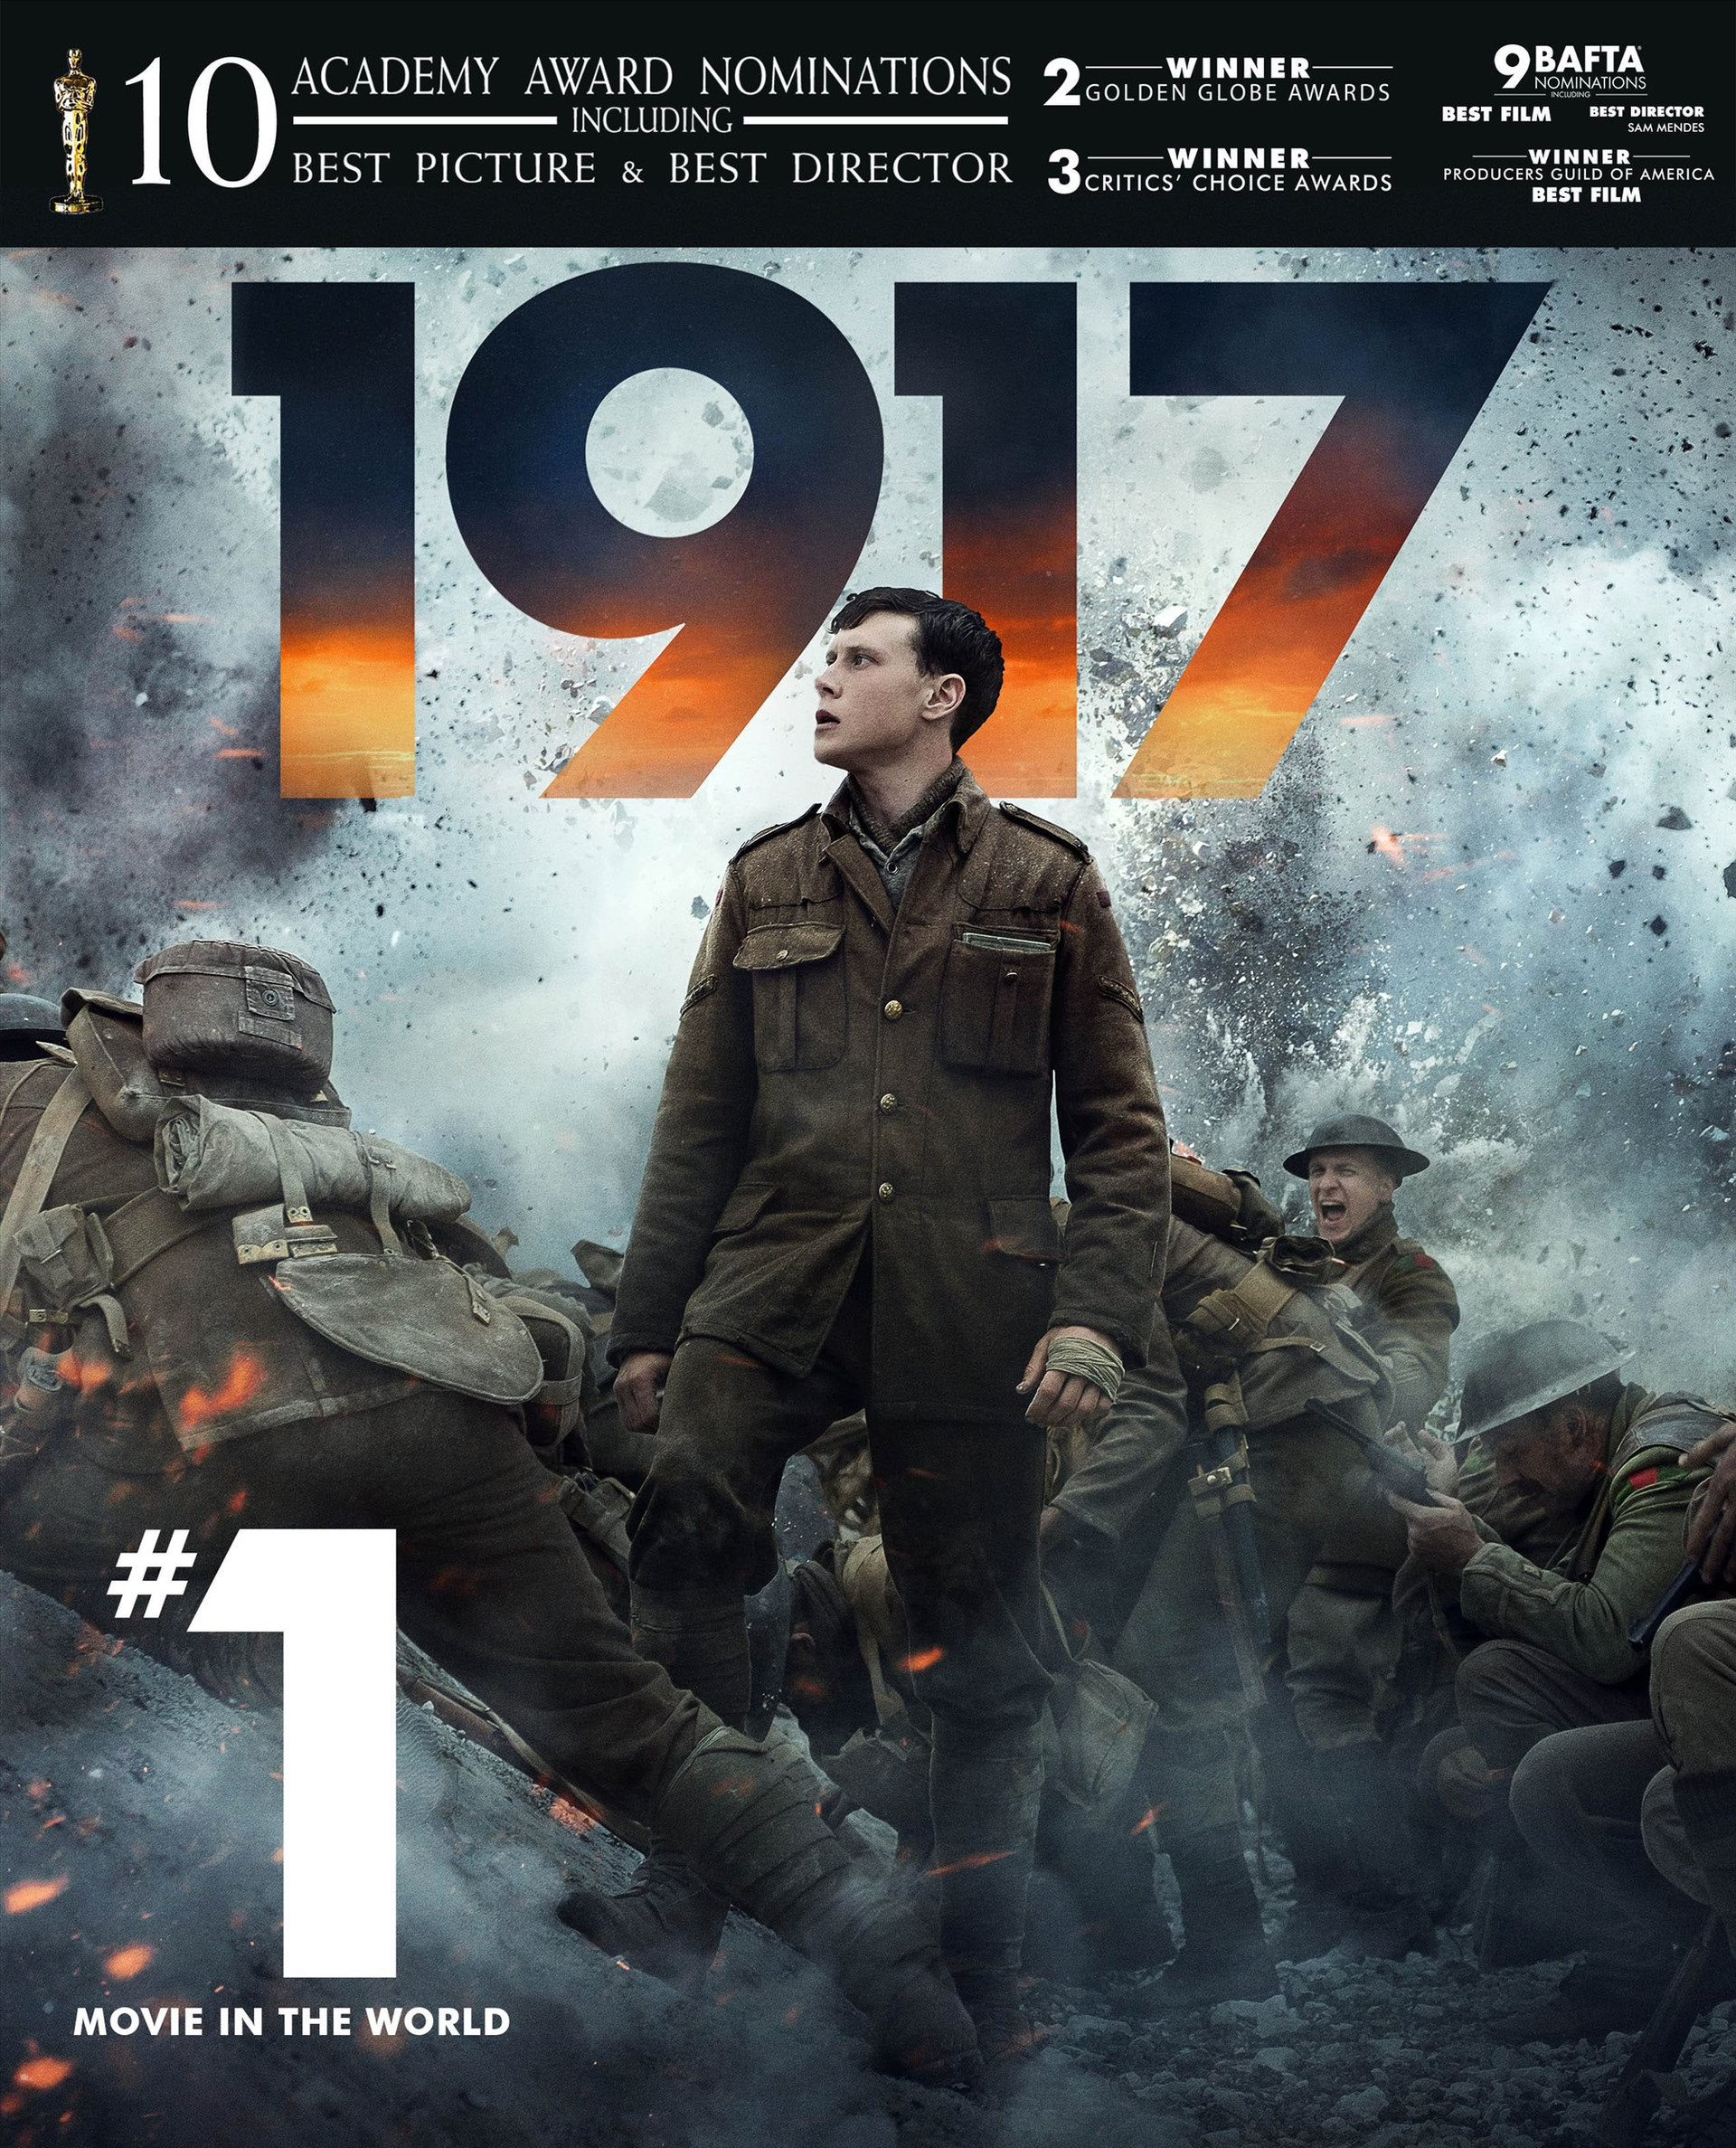 Bộ phim về đề tài chiến tranh “1917” của đạo diễn Sam Mendes đã được vinh danh ở hai hạng mục Quay phim xuất sắc và Hòa âm xuất sắc nhất tại lễ trao giải Oscar lần thứ 92.